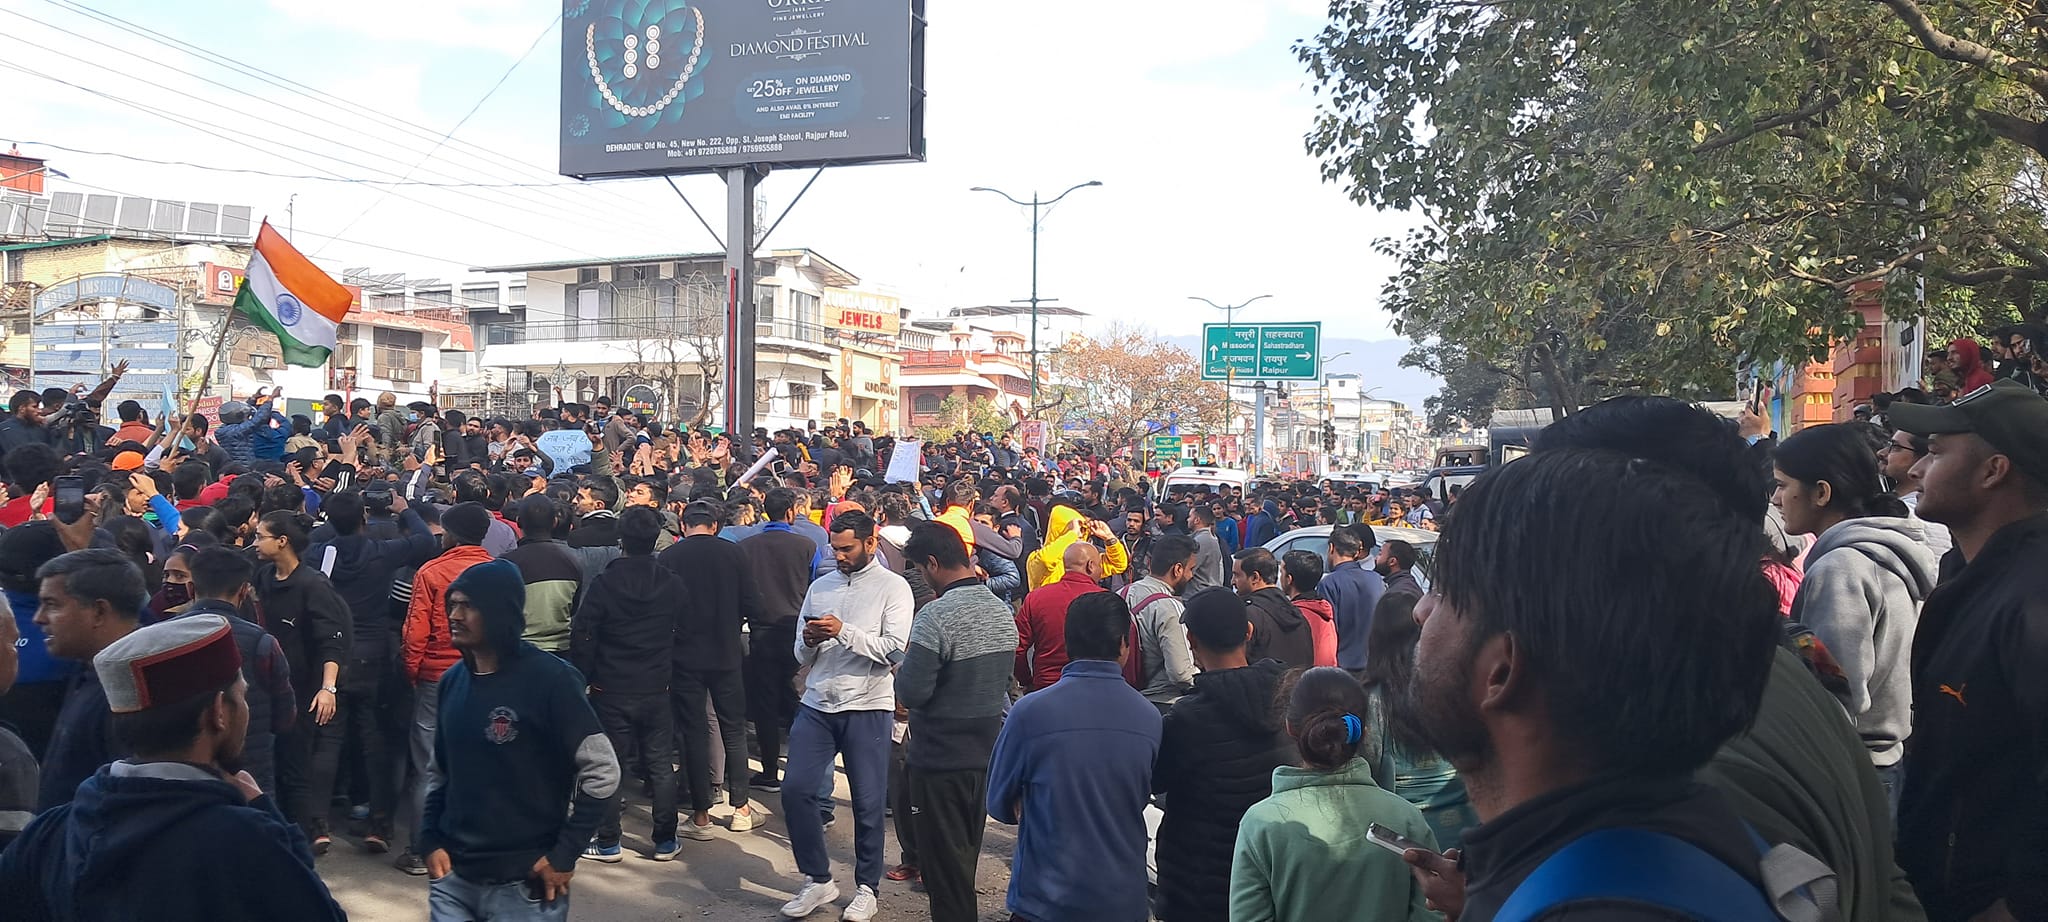 दून पुलिस की कार्रवाई से बेरोजगारों में जबरदस्त उबाल, गांधी पार्क के सामने प्रदर्शन, भारी भीड़ जमा